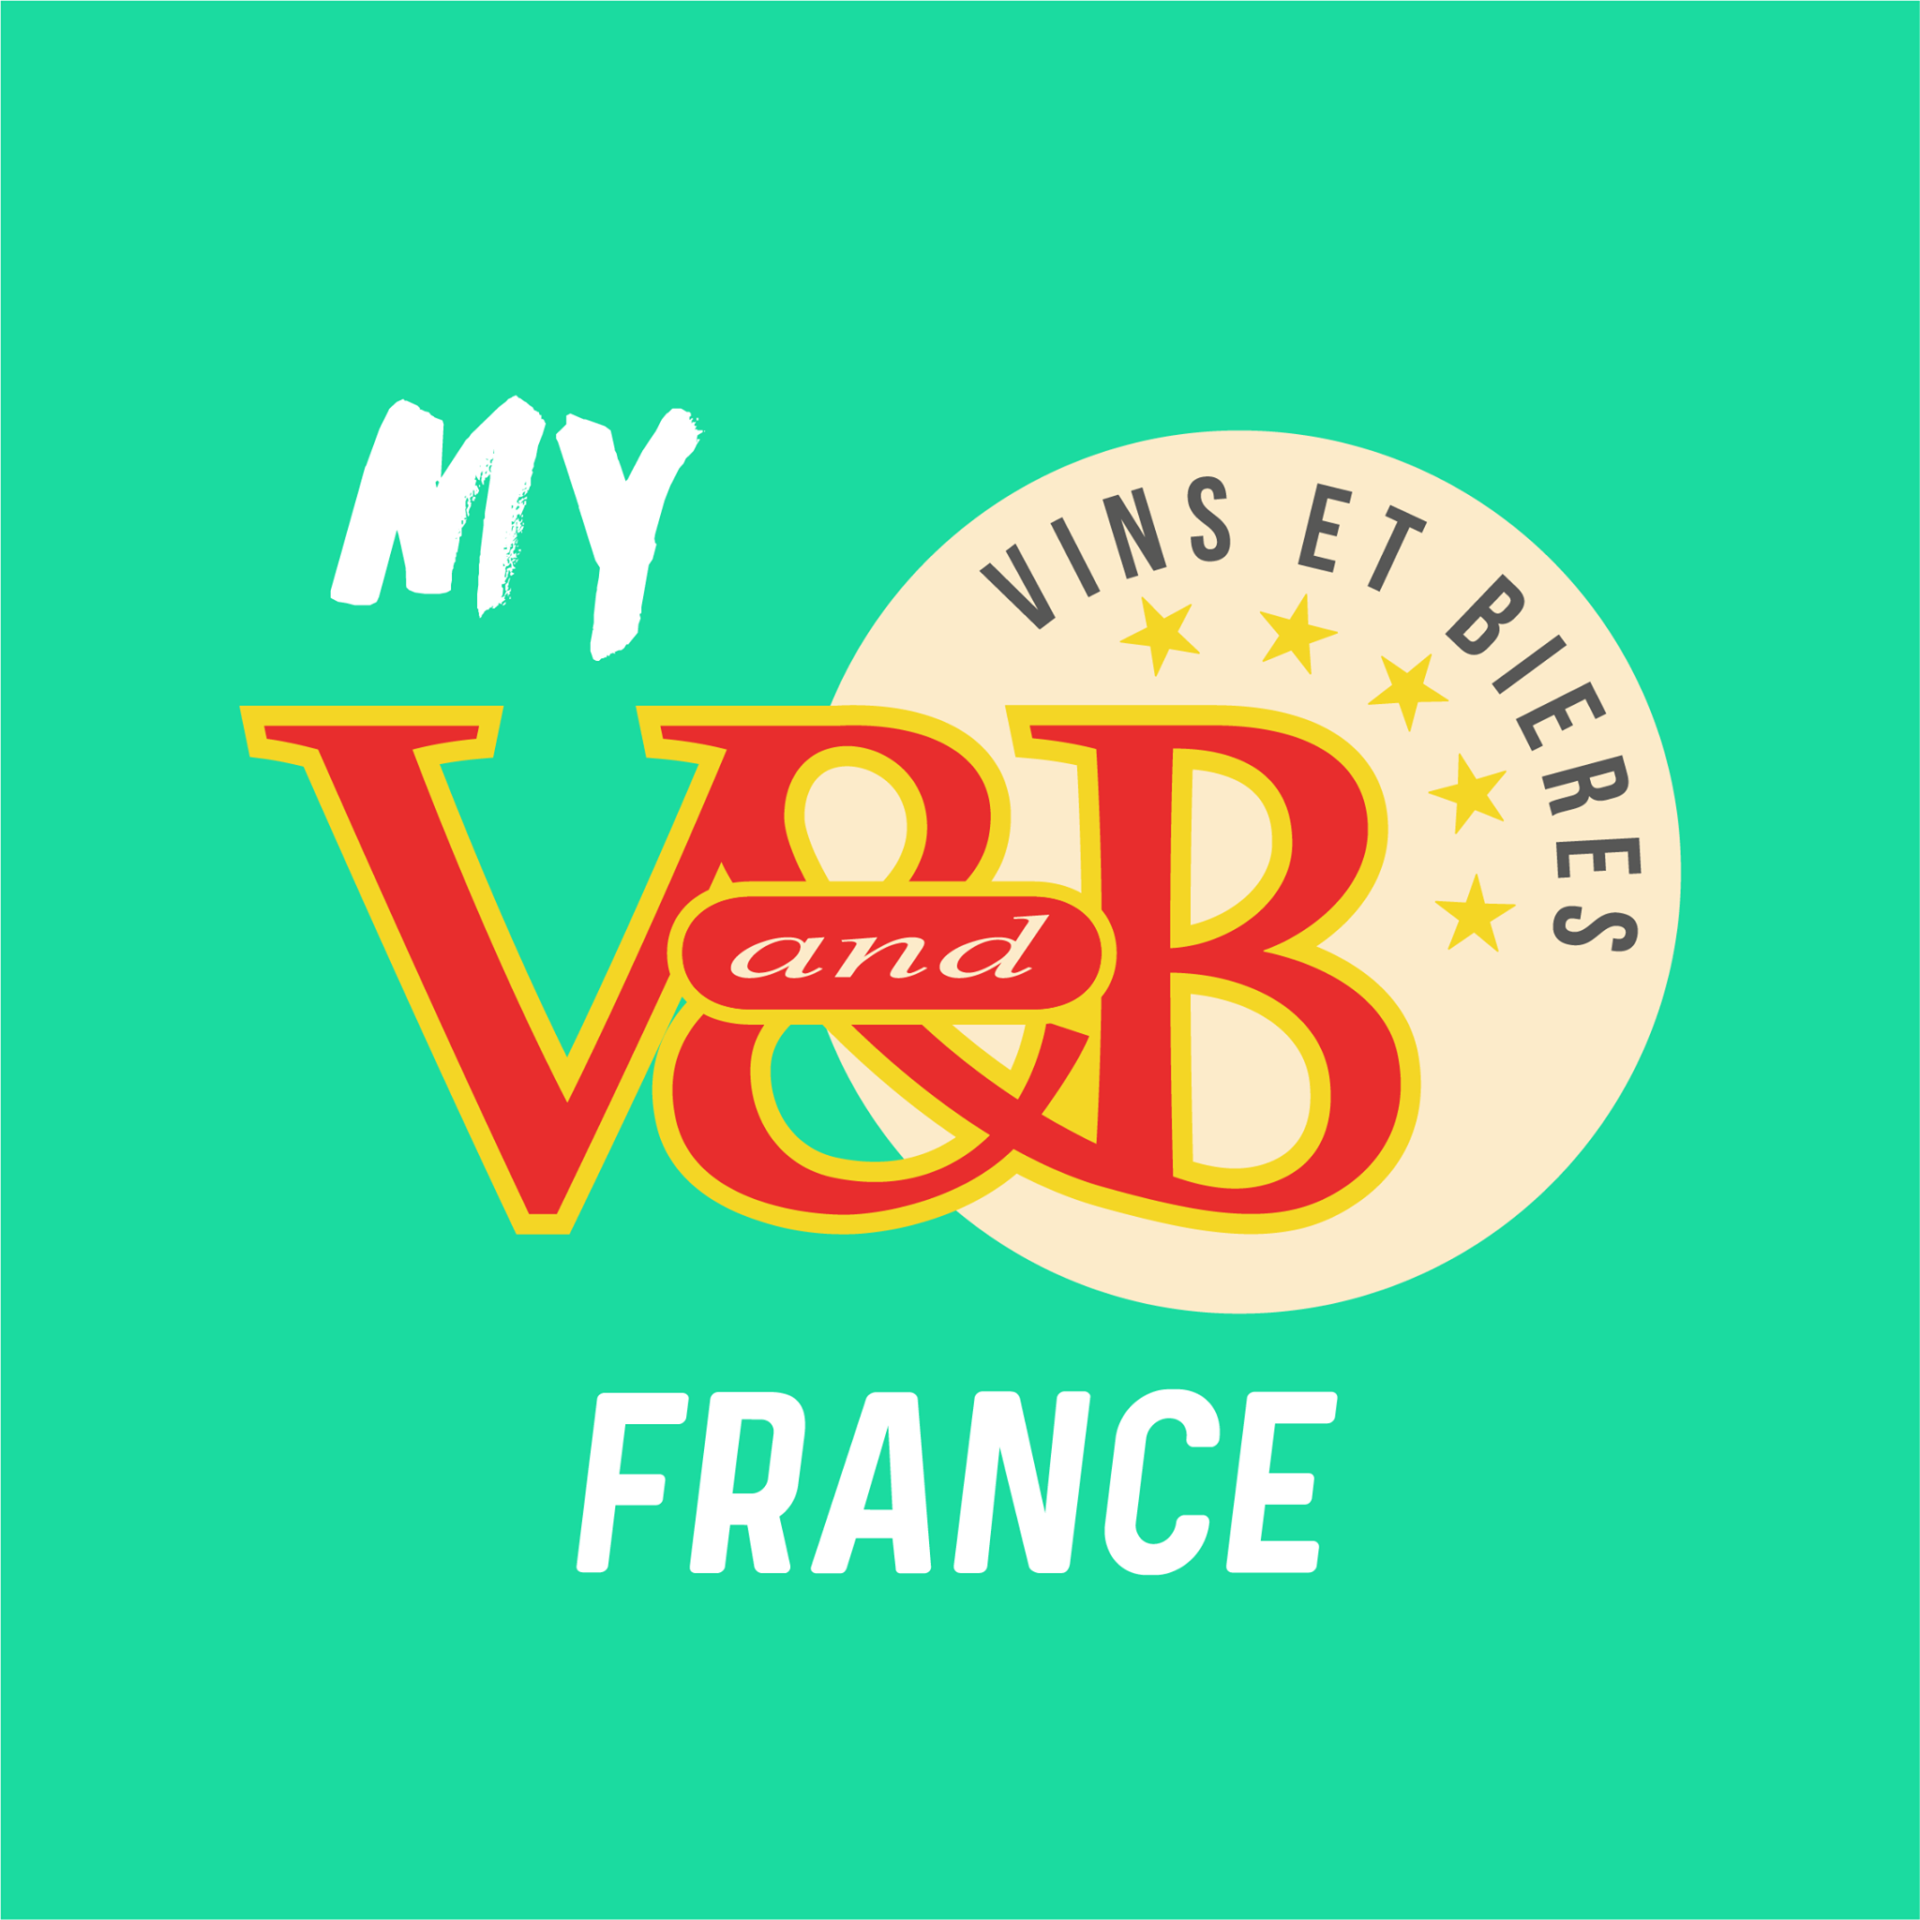 V and B – vins et bières